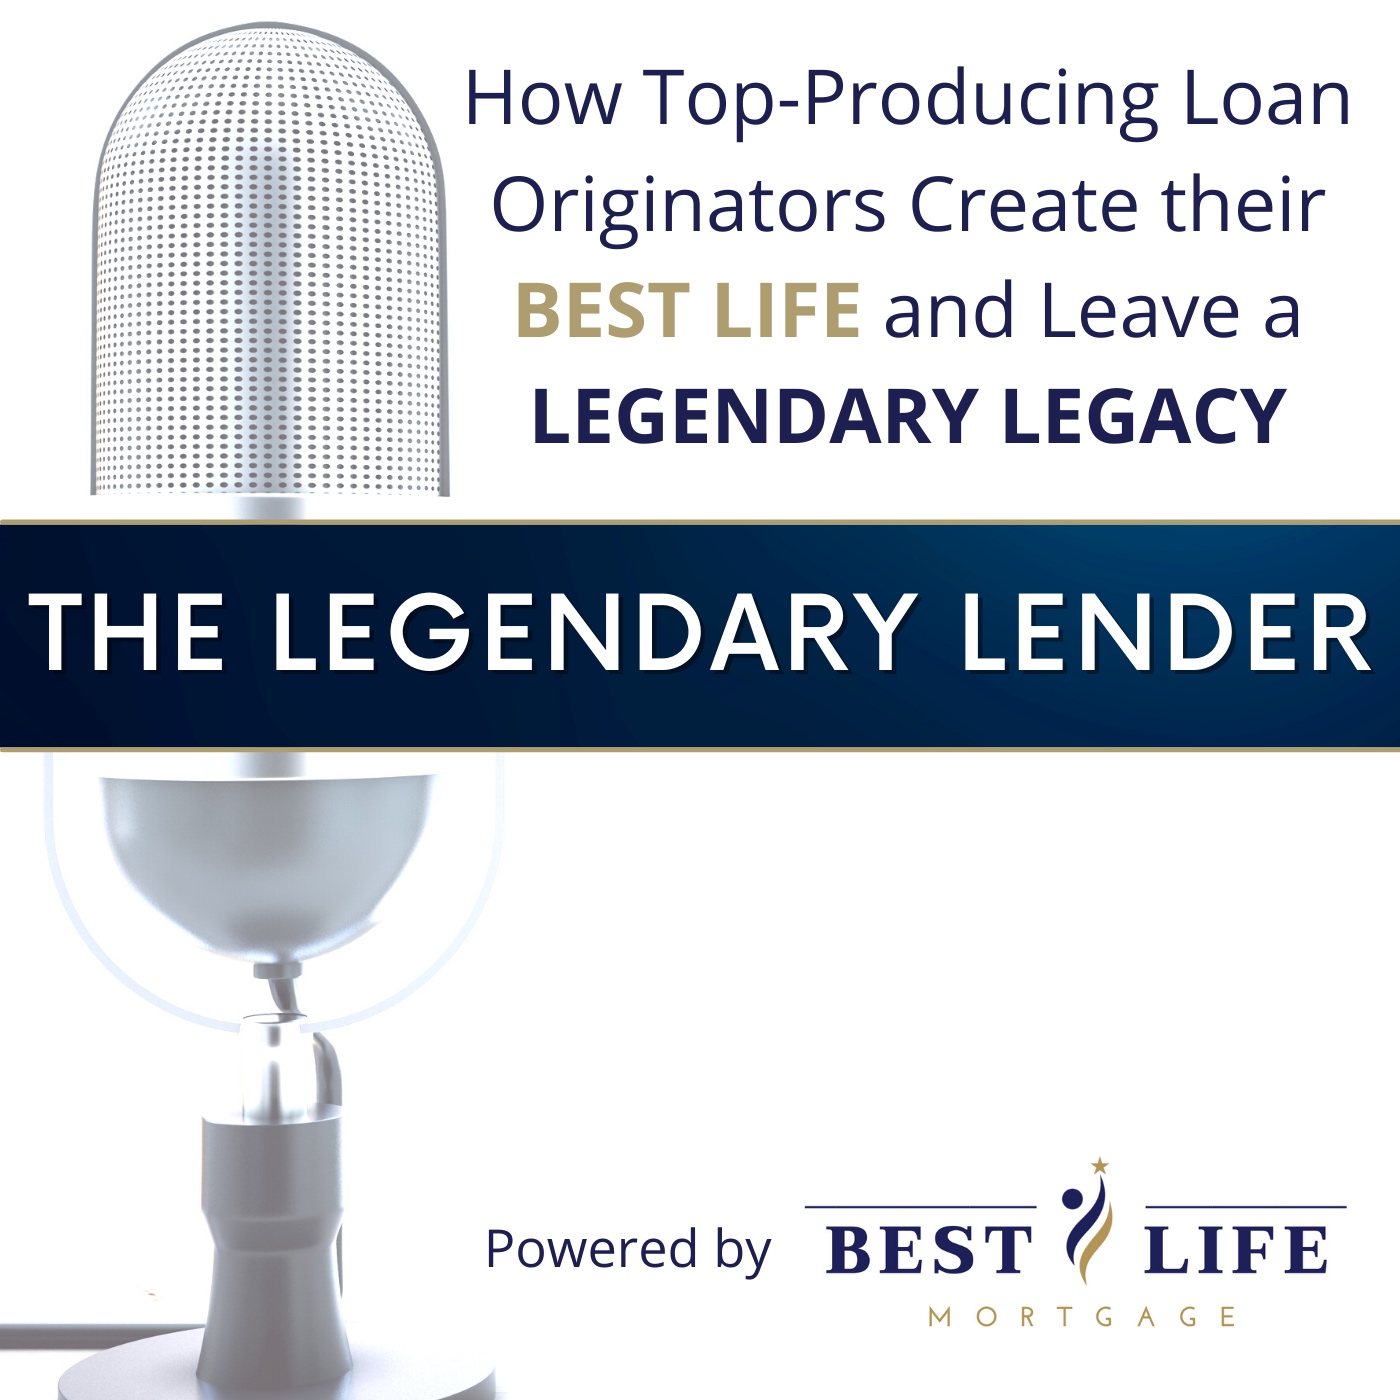 The Legendary Lender